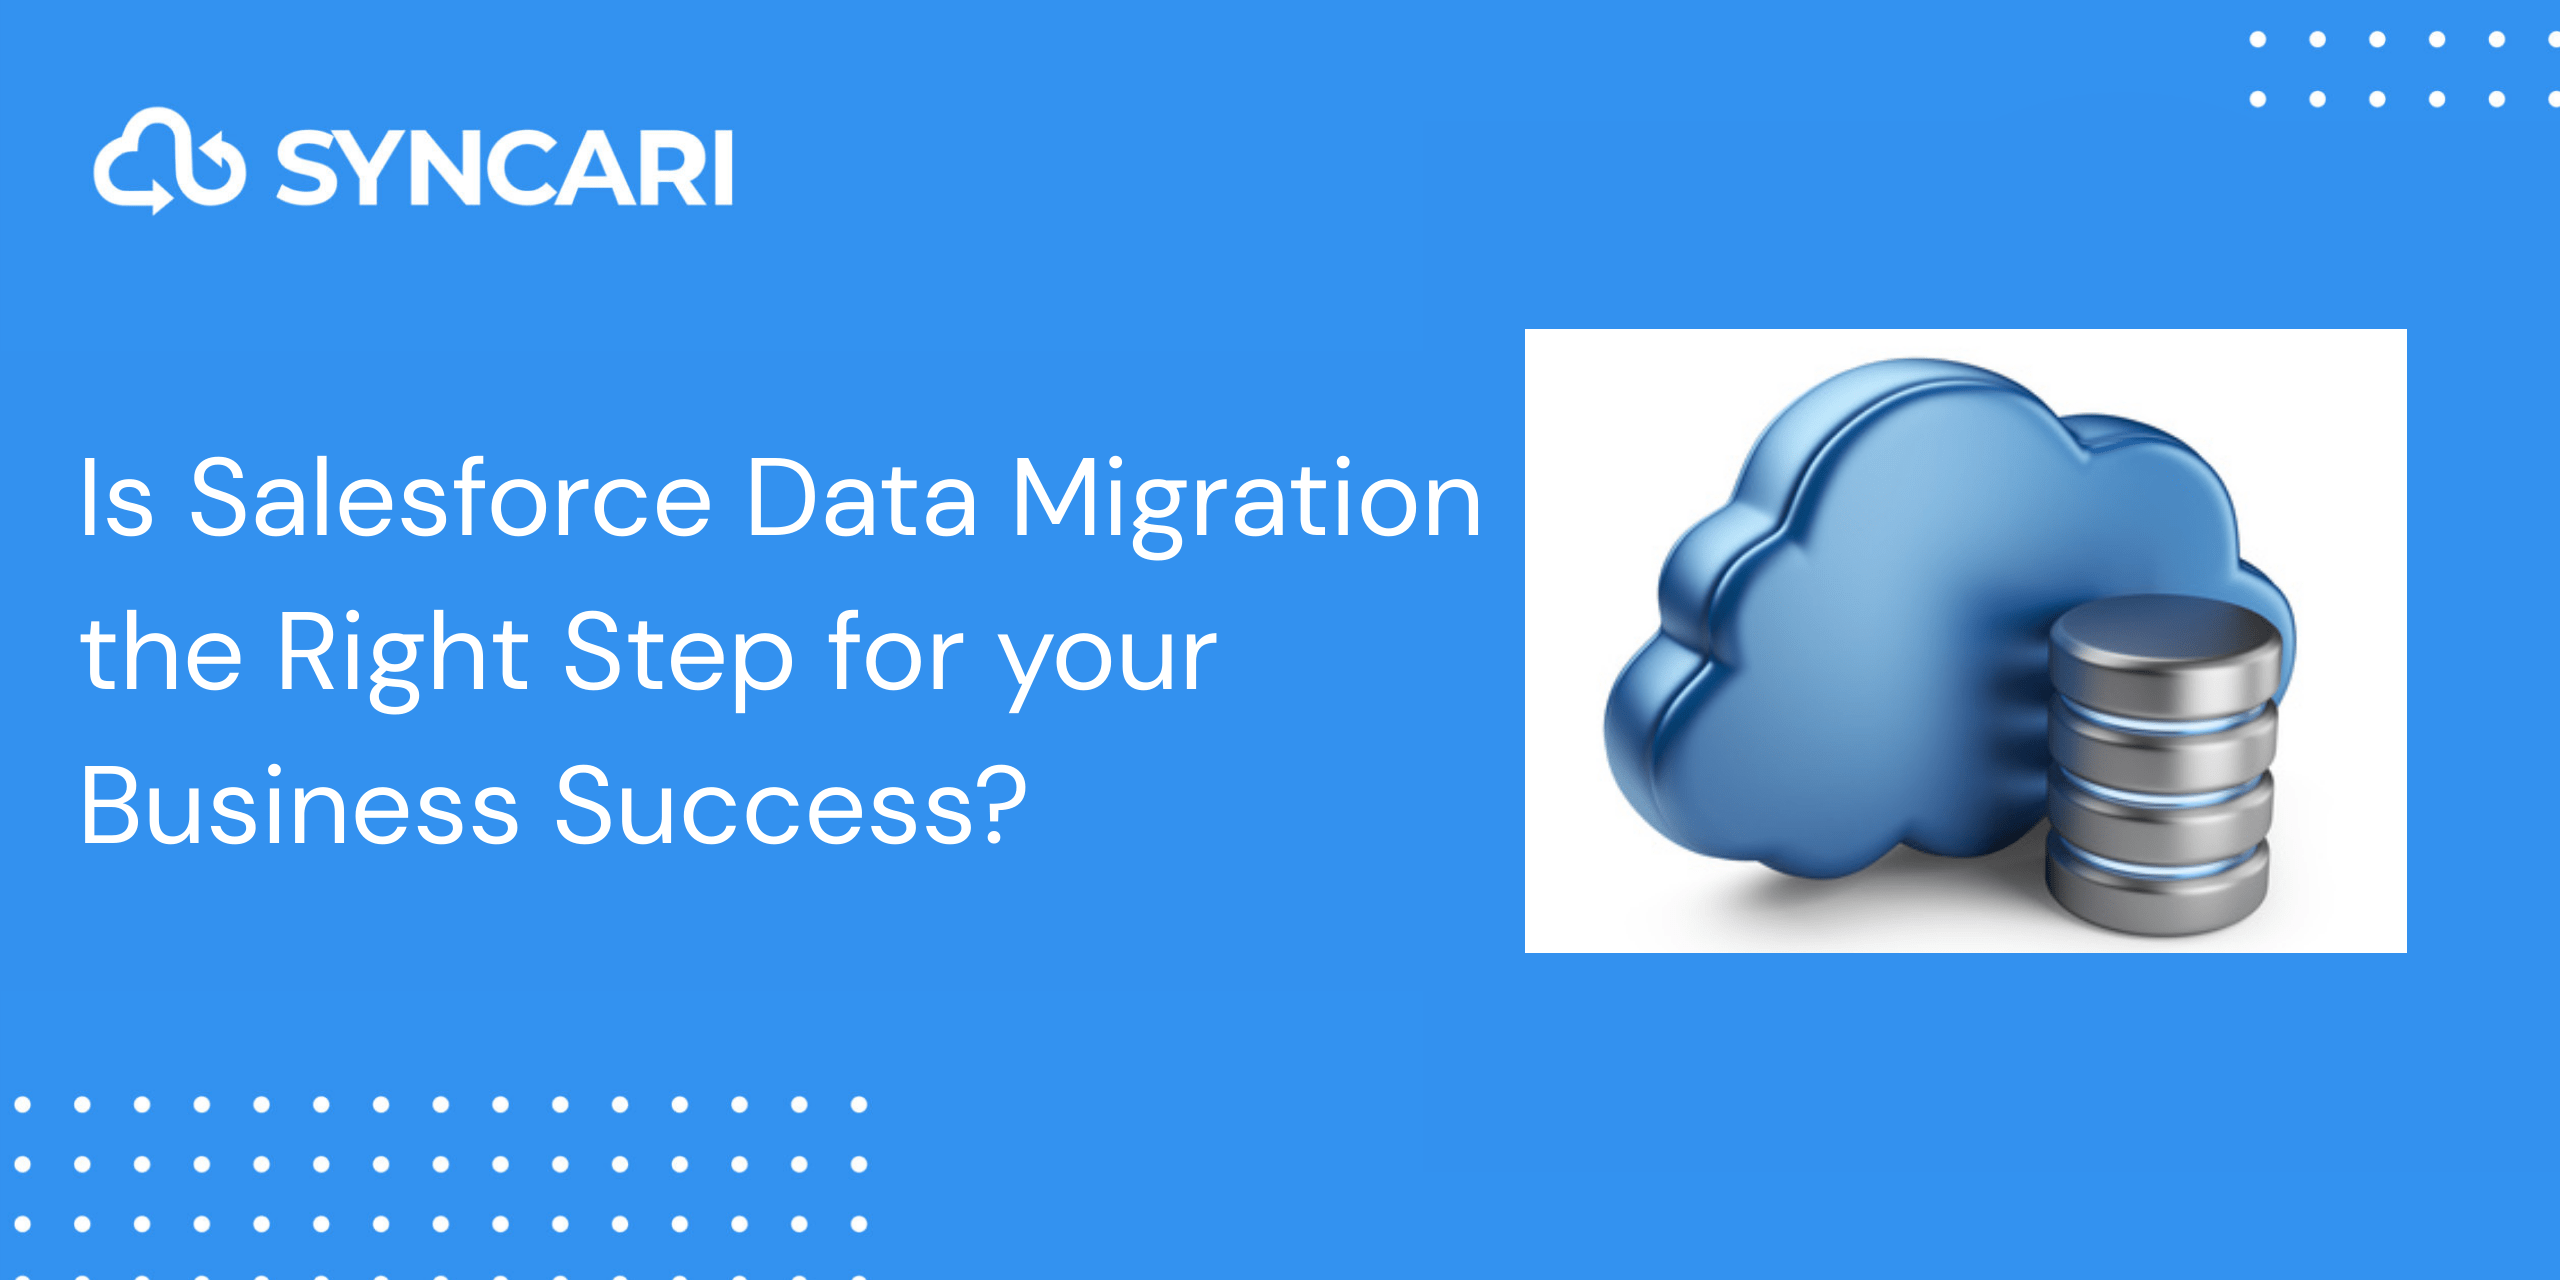 Salesforce Data migration